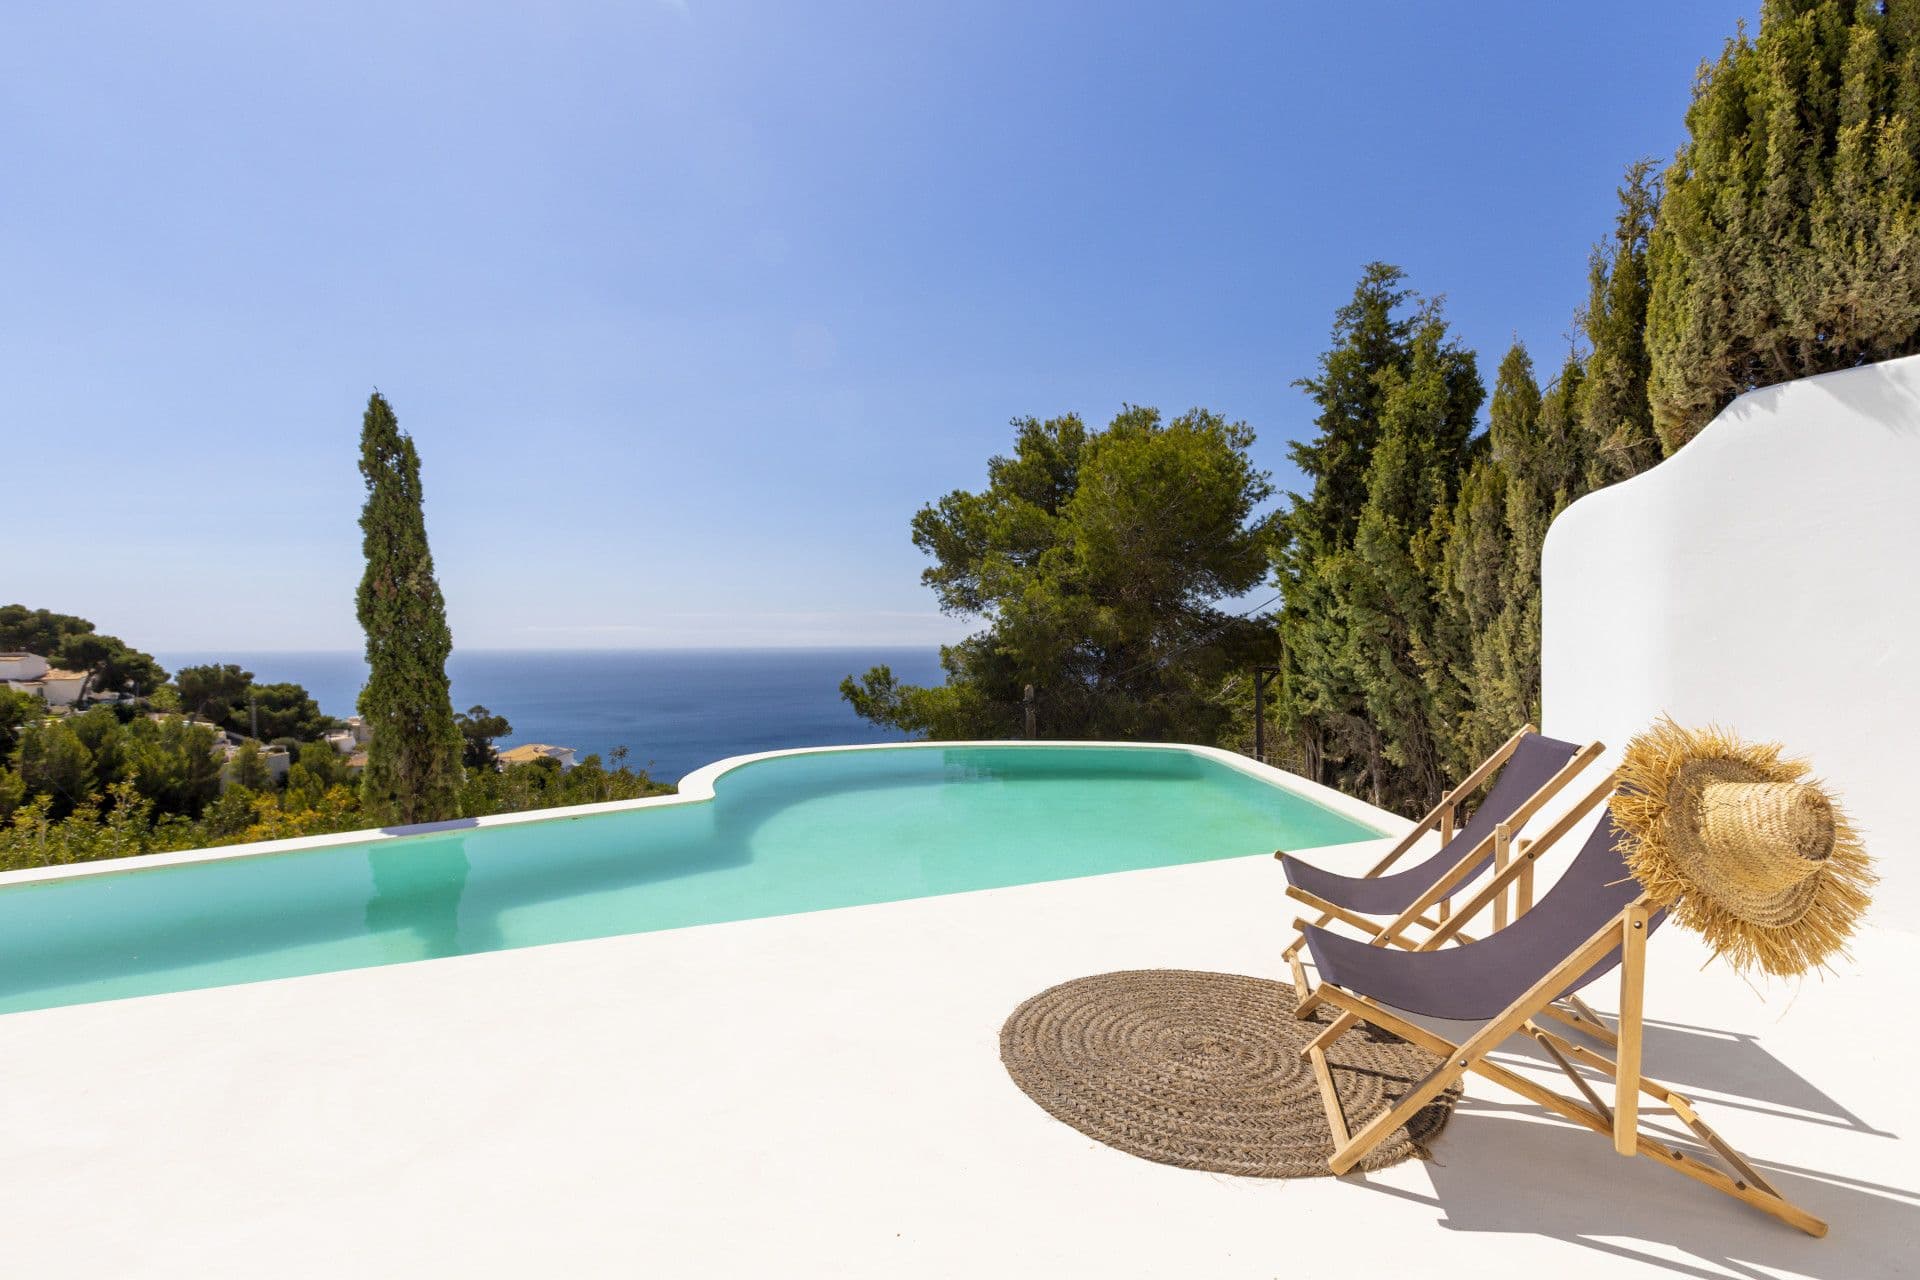 Ibiza style villa with fantastic views located in the area of Costa Nova, Jávea